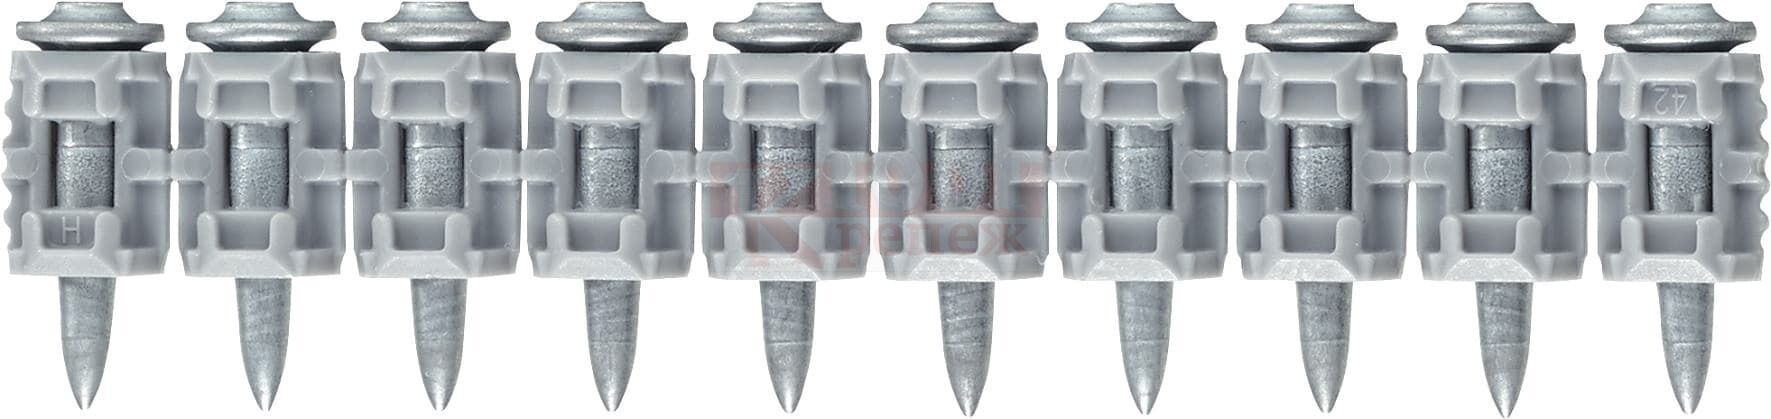 X-P 20 G3 MX Гвоздь монтажный по бетону HILTI для GX 3, GX 3-ME оц. сталь, 20x3 мм 1xGC 42 (1200 шт.)